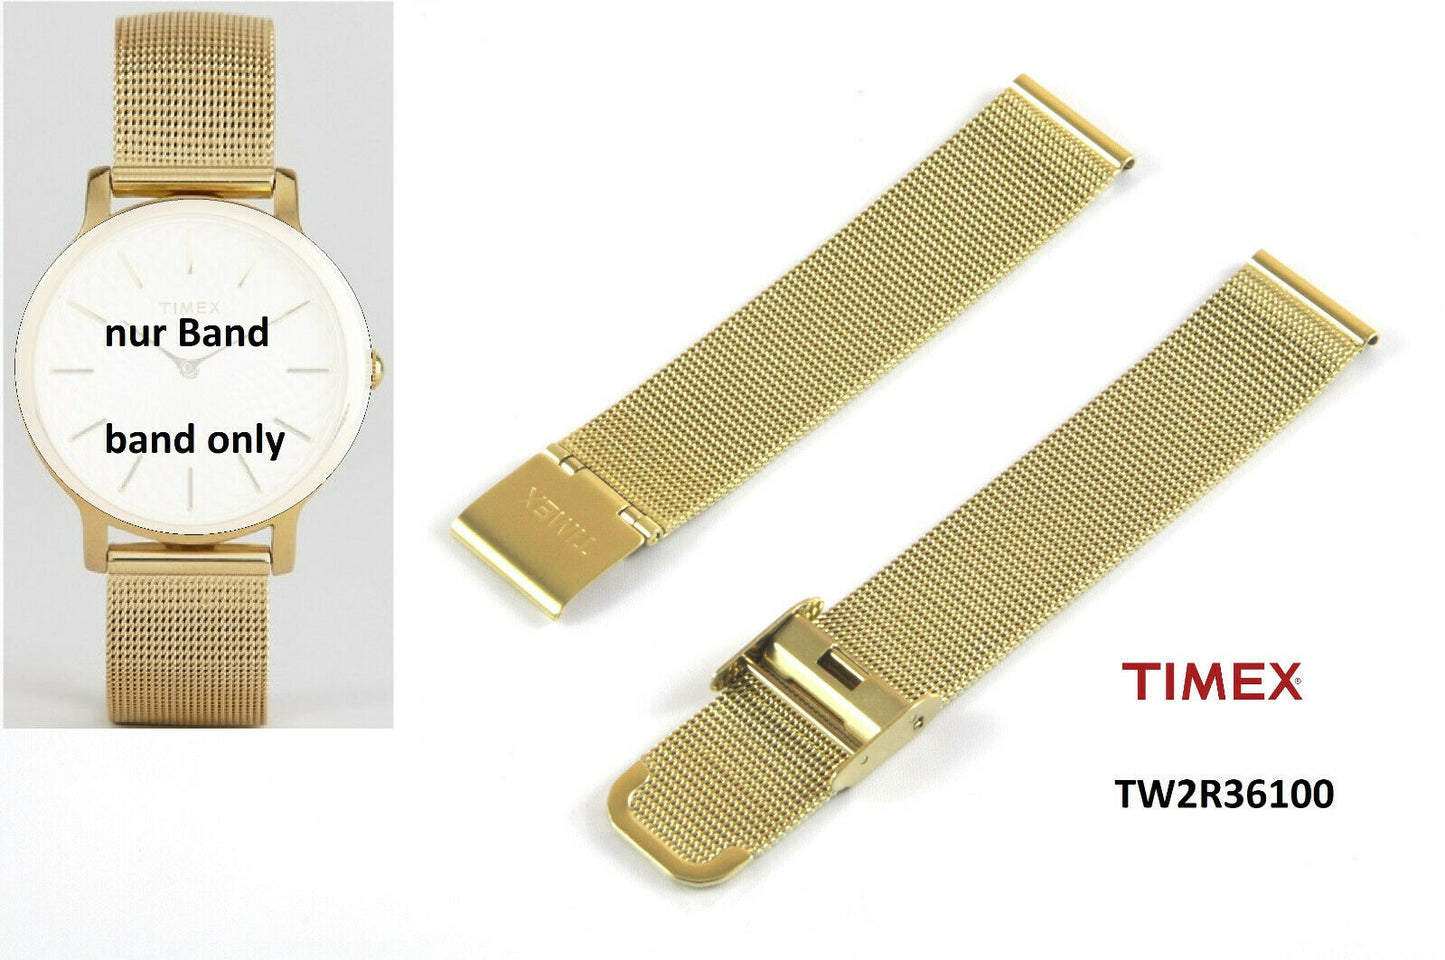 Timex Ersatzarmband TW2R36100 Metropolitan Milanaise - Ersatzband 16mm Edelstahl